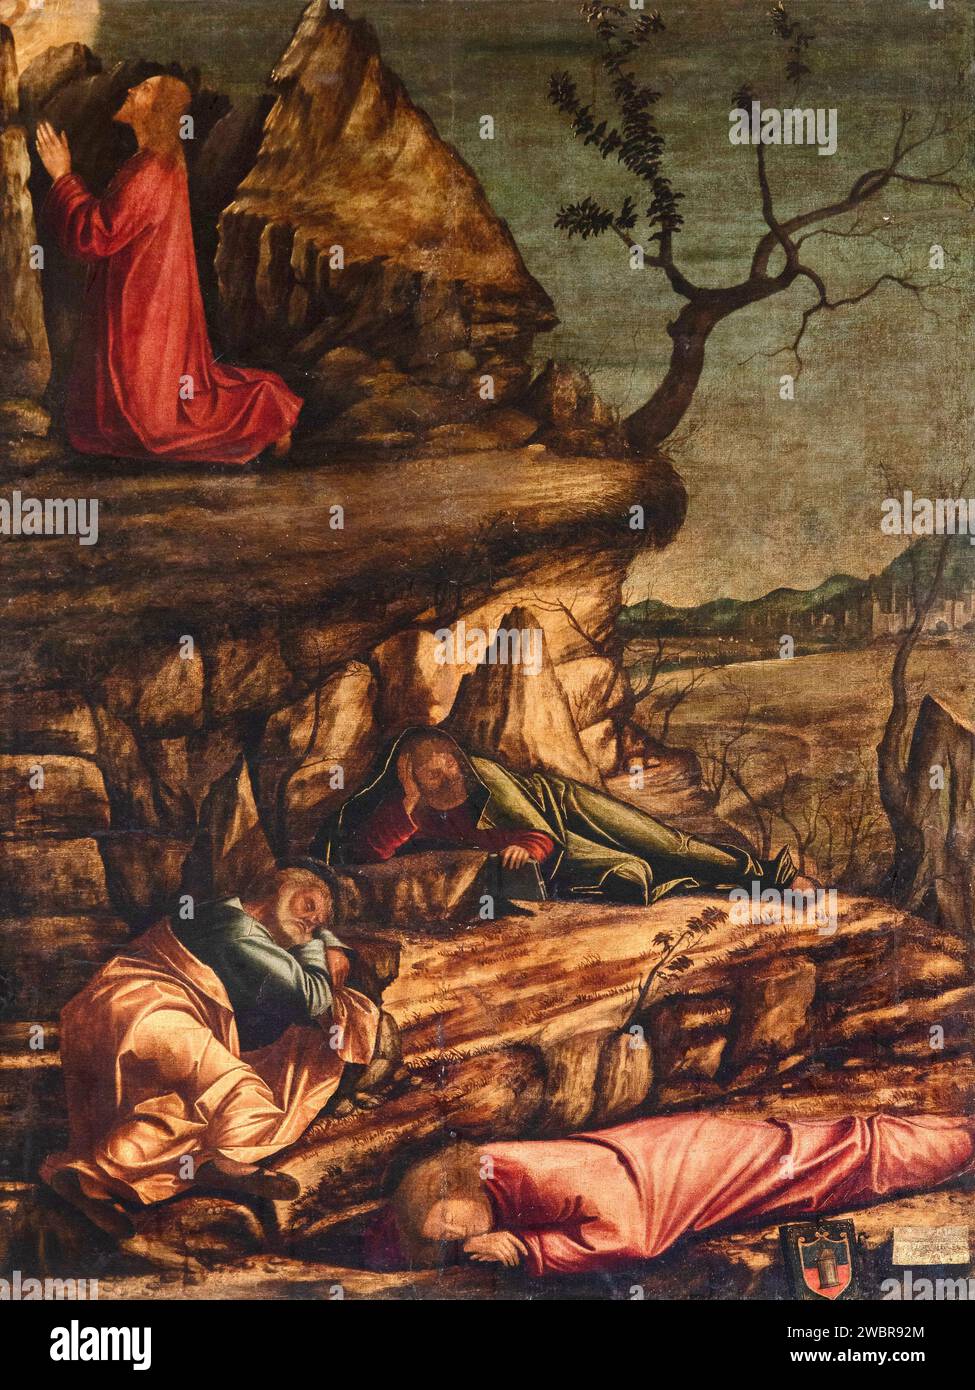 Orazione nell’orto dei Getsemani - olio su tela - Vittore Carpaccio - 1502 - Venezia, Scuola Dalmata dei Santi Giorgio e Trifone, detta anche Scuola Banque D'Images